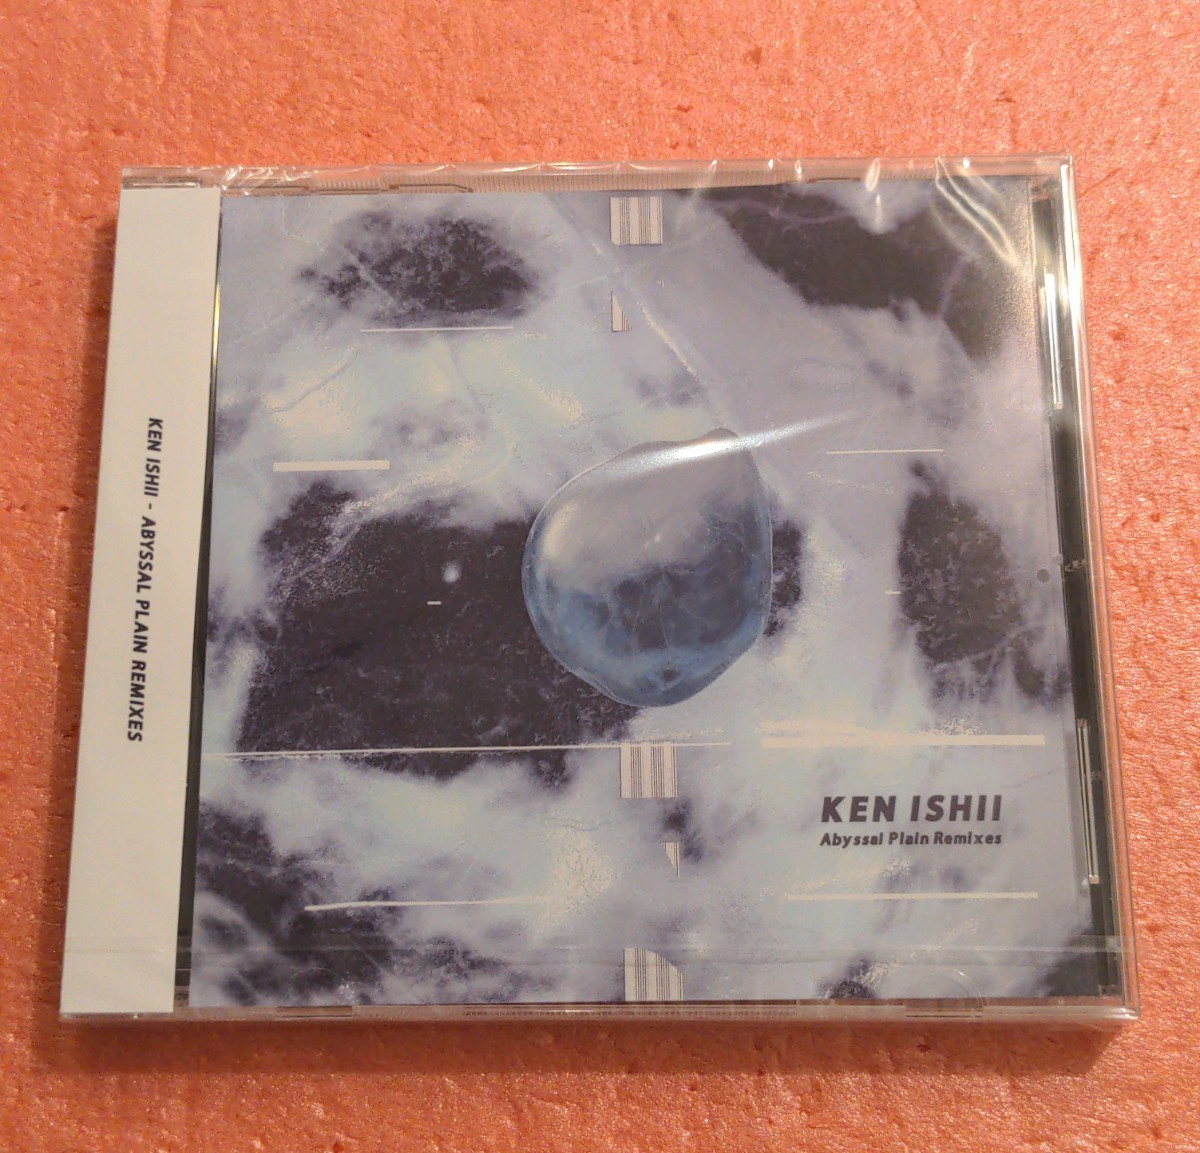  нераспечатанный CD с лентой KEN ISHII Abyssal Plain Remixes талон isii